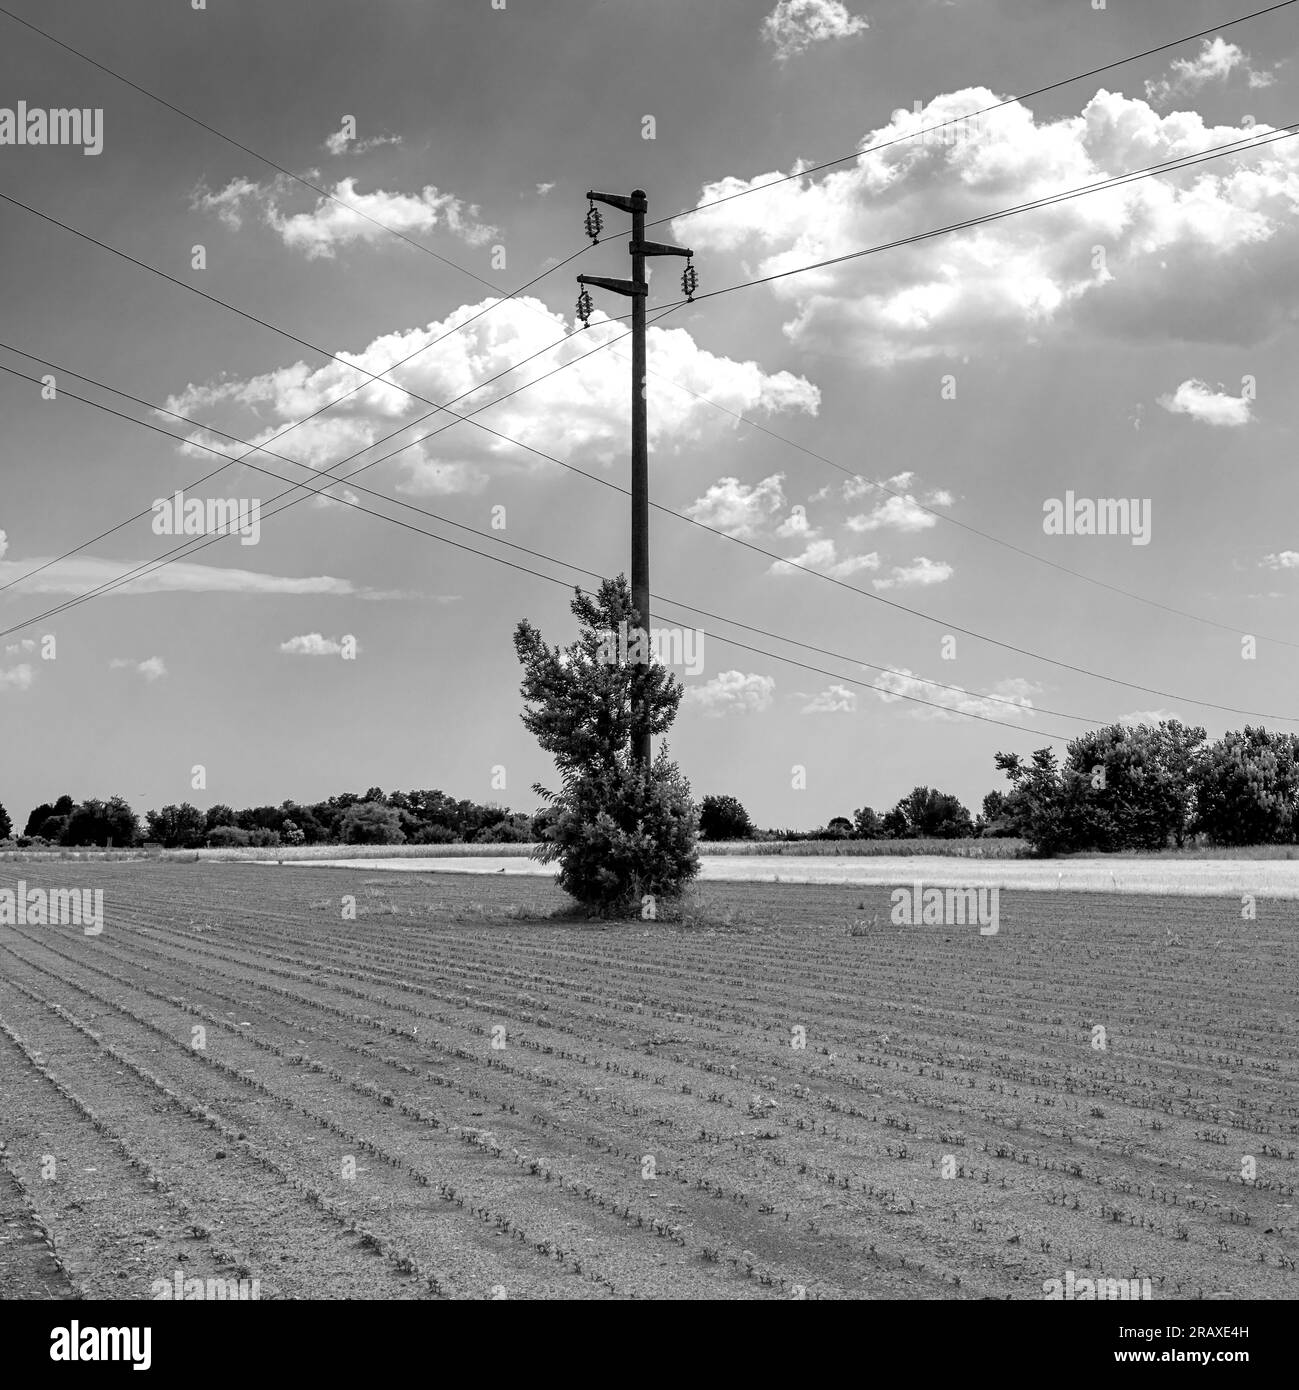 immagine in bianco e nero di un pilone elettrico nel mezzo di un campo coltivato Foto Stock